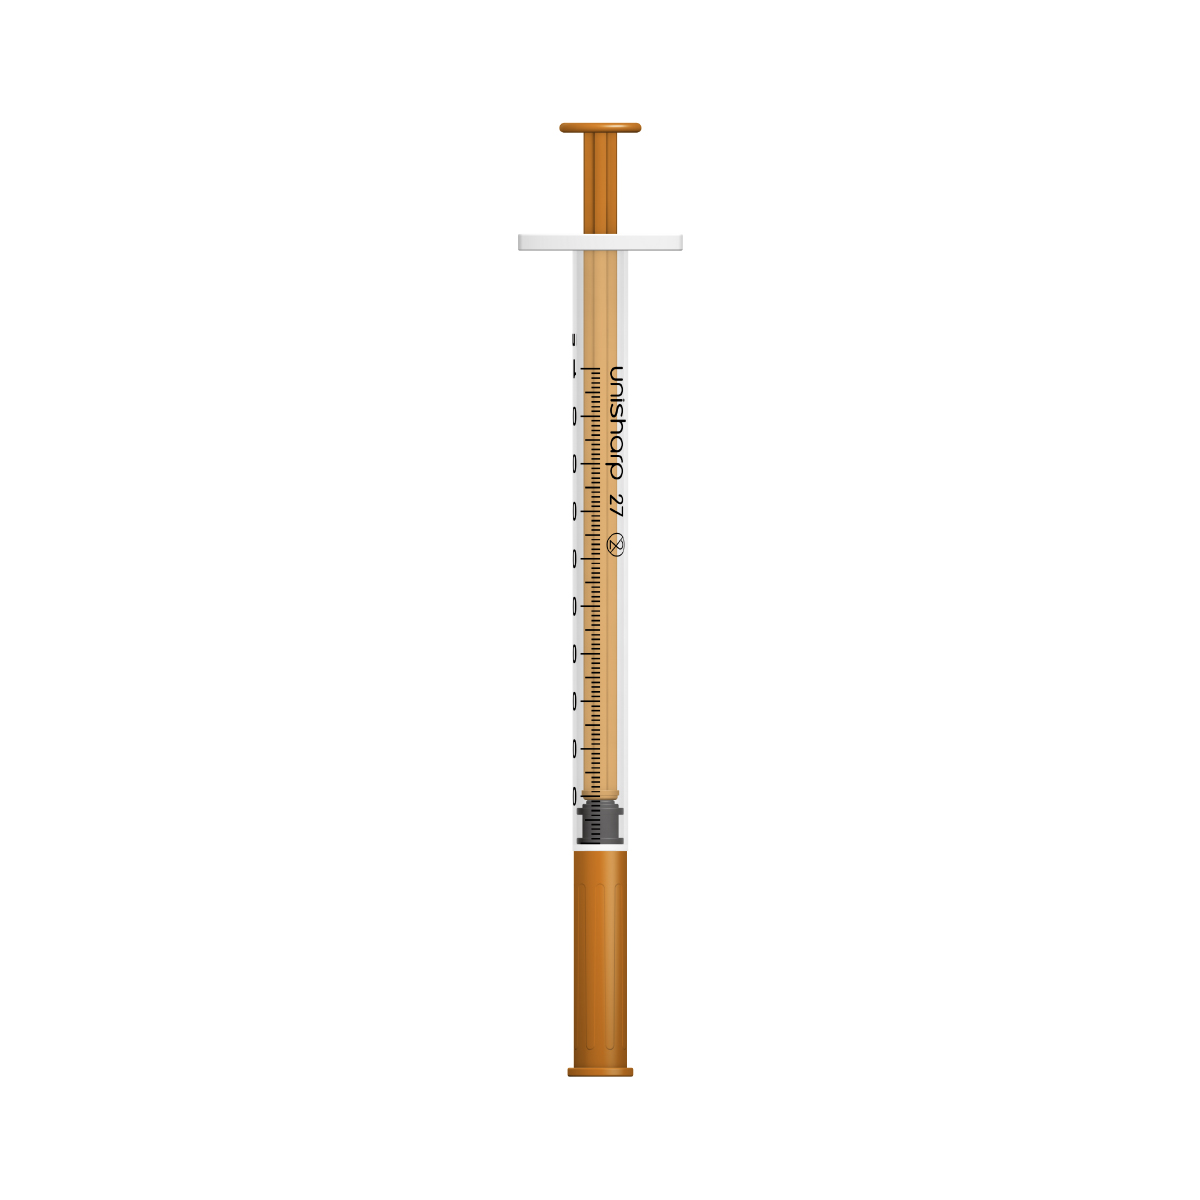 Unisharp 1ml 27G fixed needle syringe: Orange